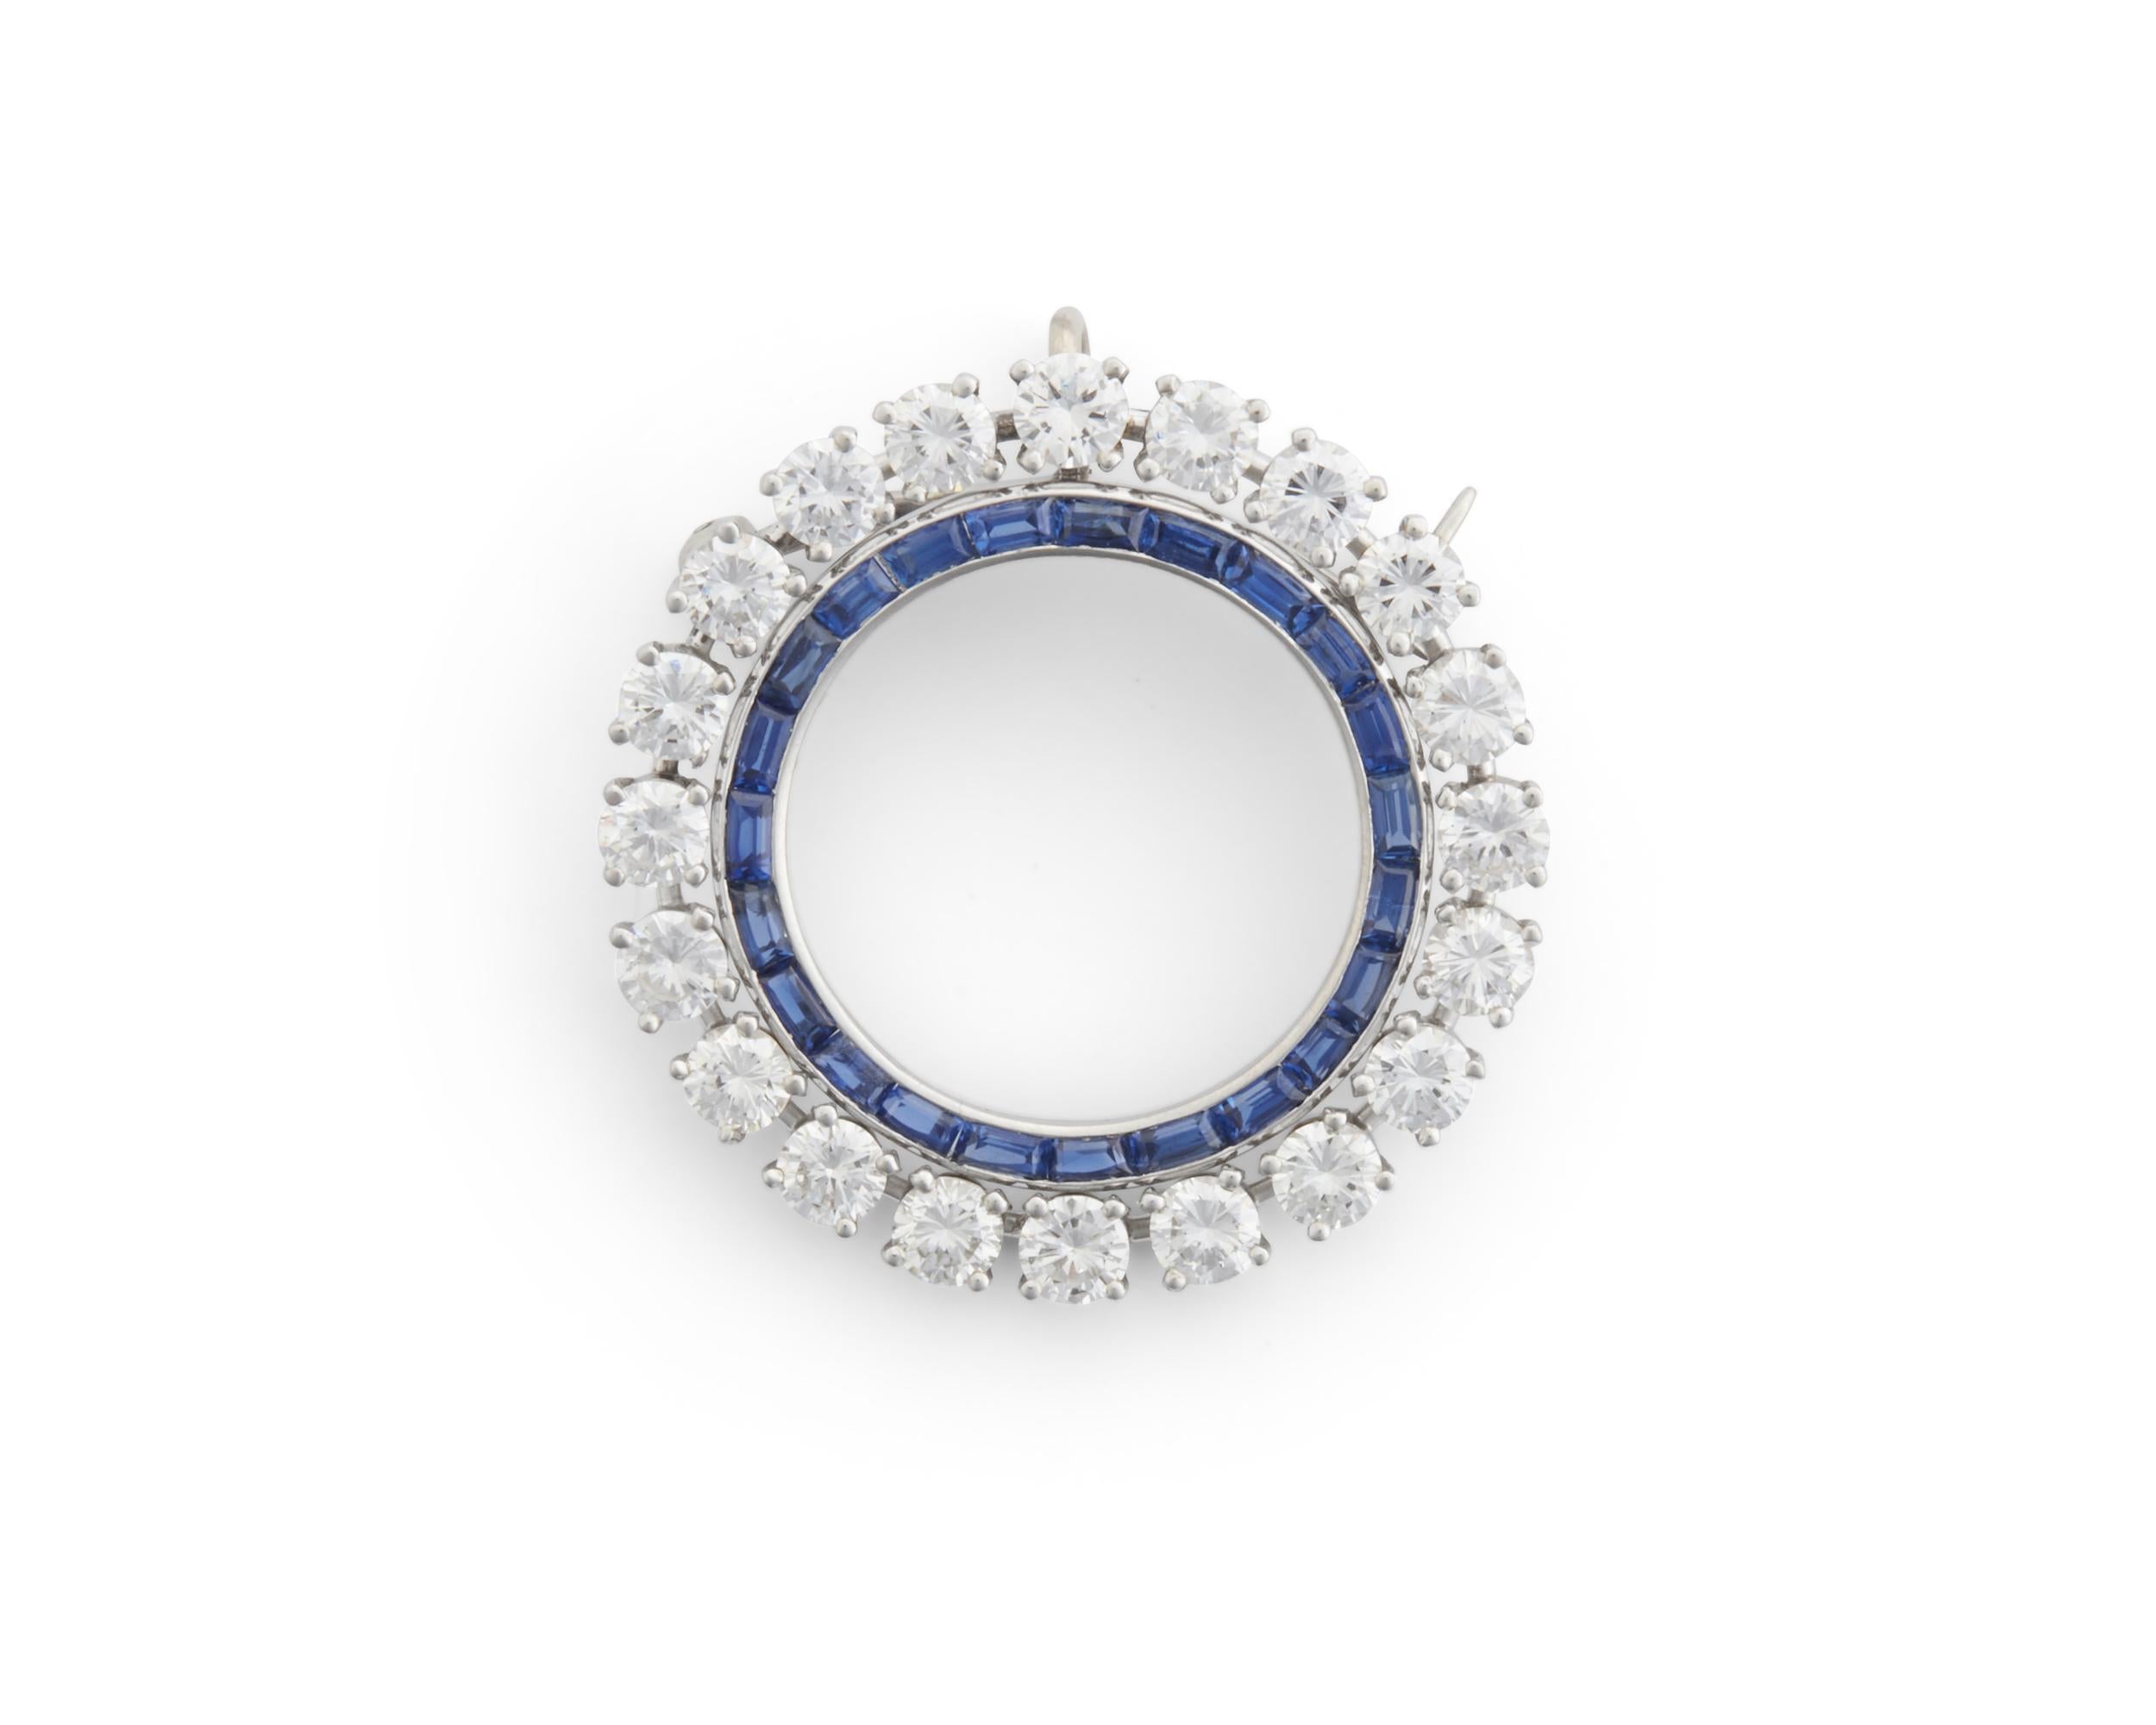 L'article suivant est un Rare Important Original Tiffany & Company Platinum Glistening Sapphire and Diamond Brooch Pin Pendentif. Cette pièce rare est composée de magnifiques saphirs bleus taille princesse et d'un halo de gros diamants ronds exquis.